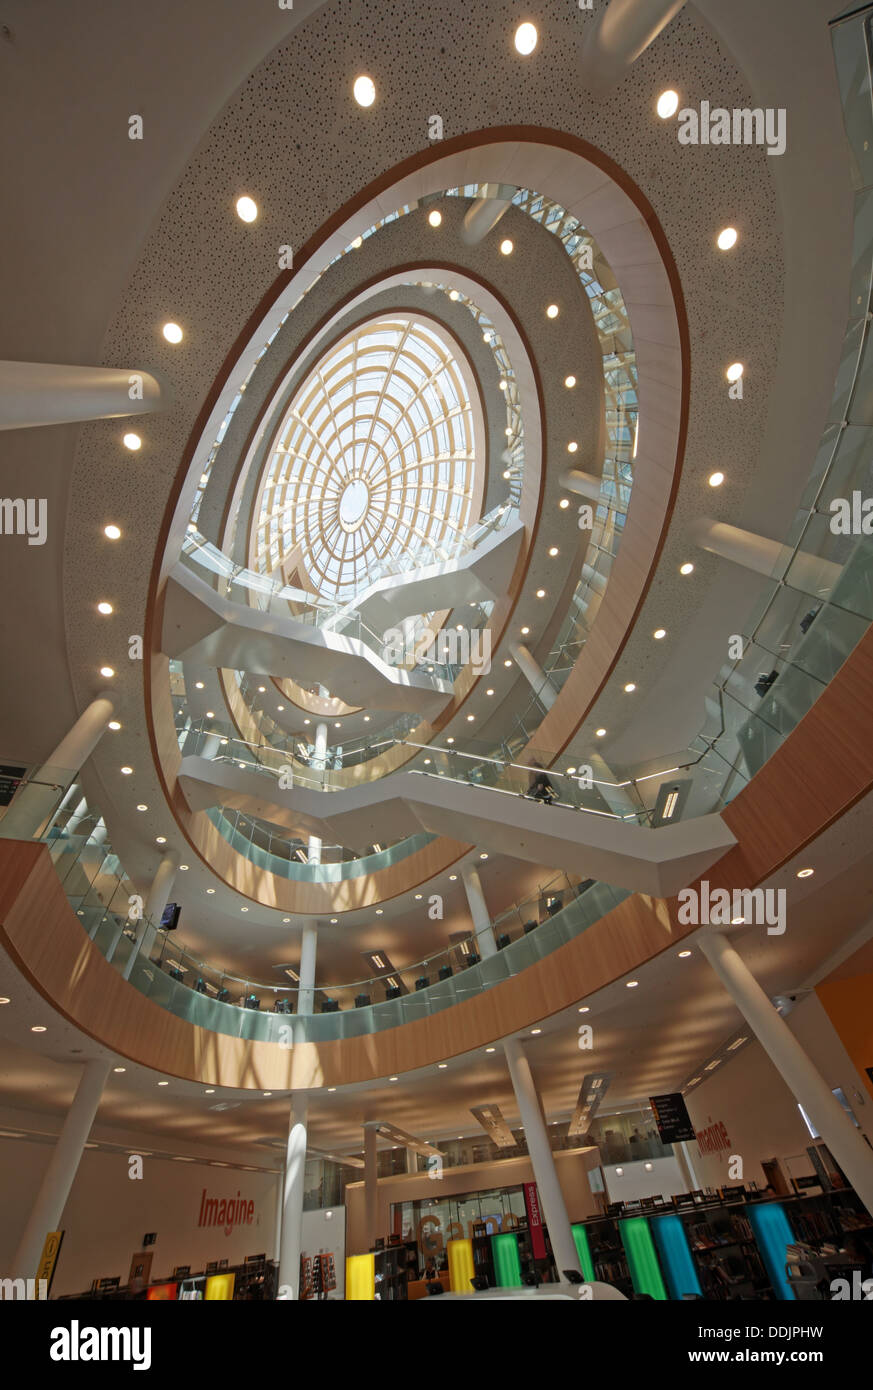 Vue grand angle de l'intérieur de la nouvelle bibliothèque centrale de Liverpool Merseyside England UK Banque D'Images